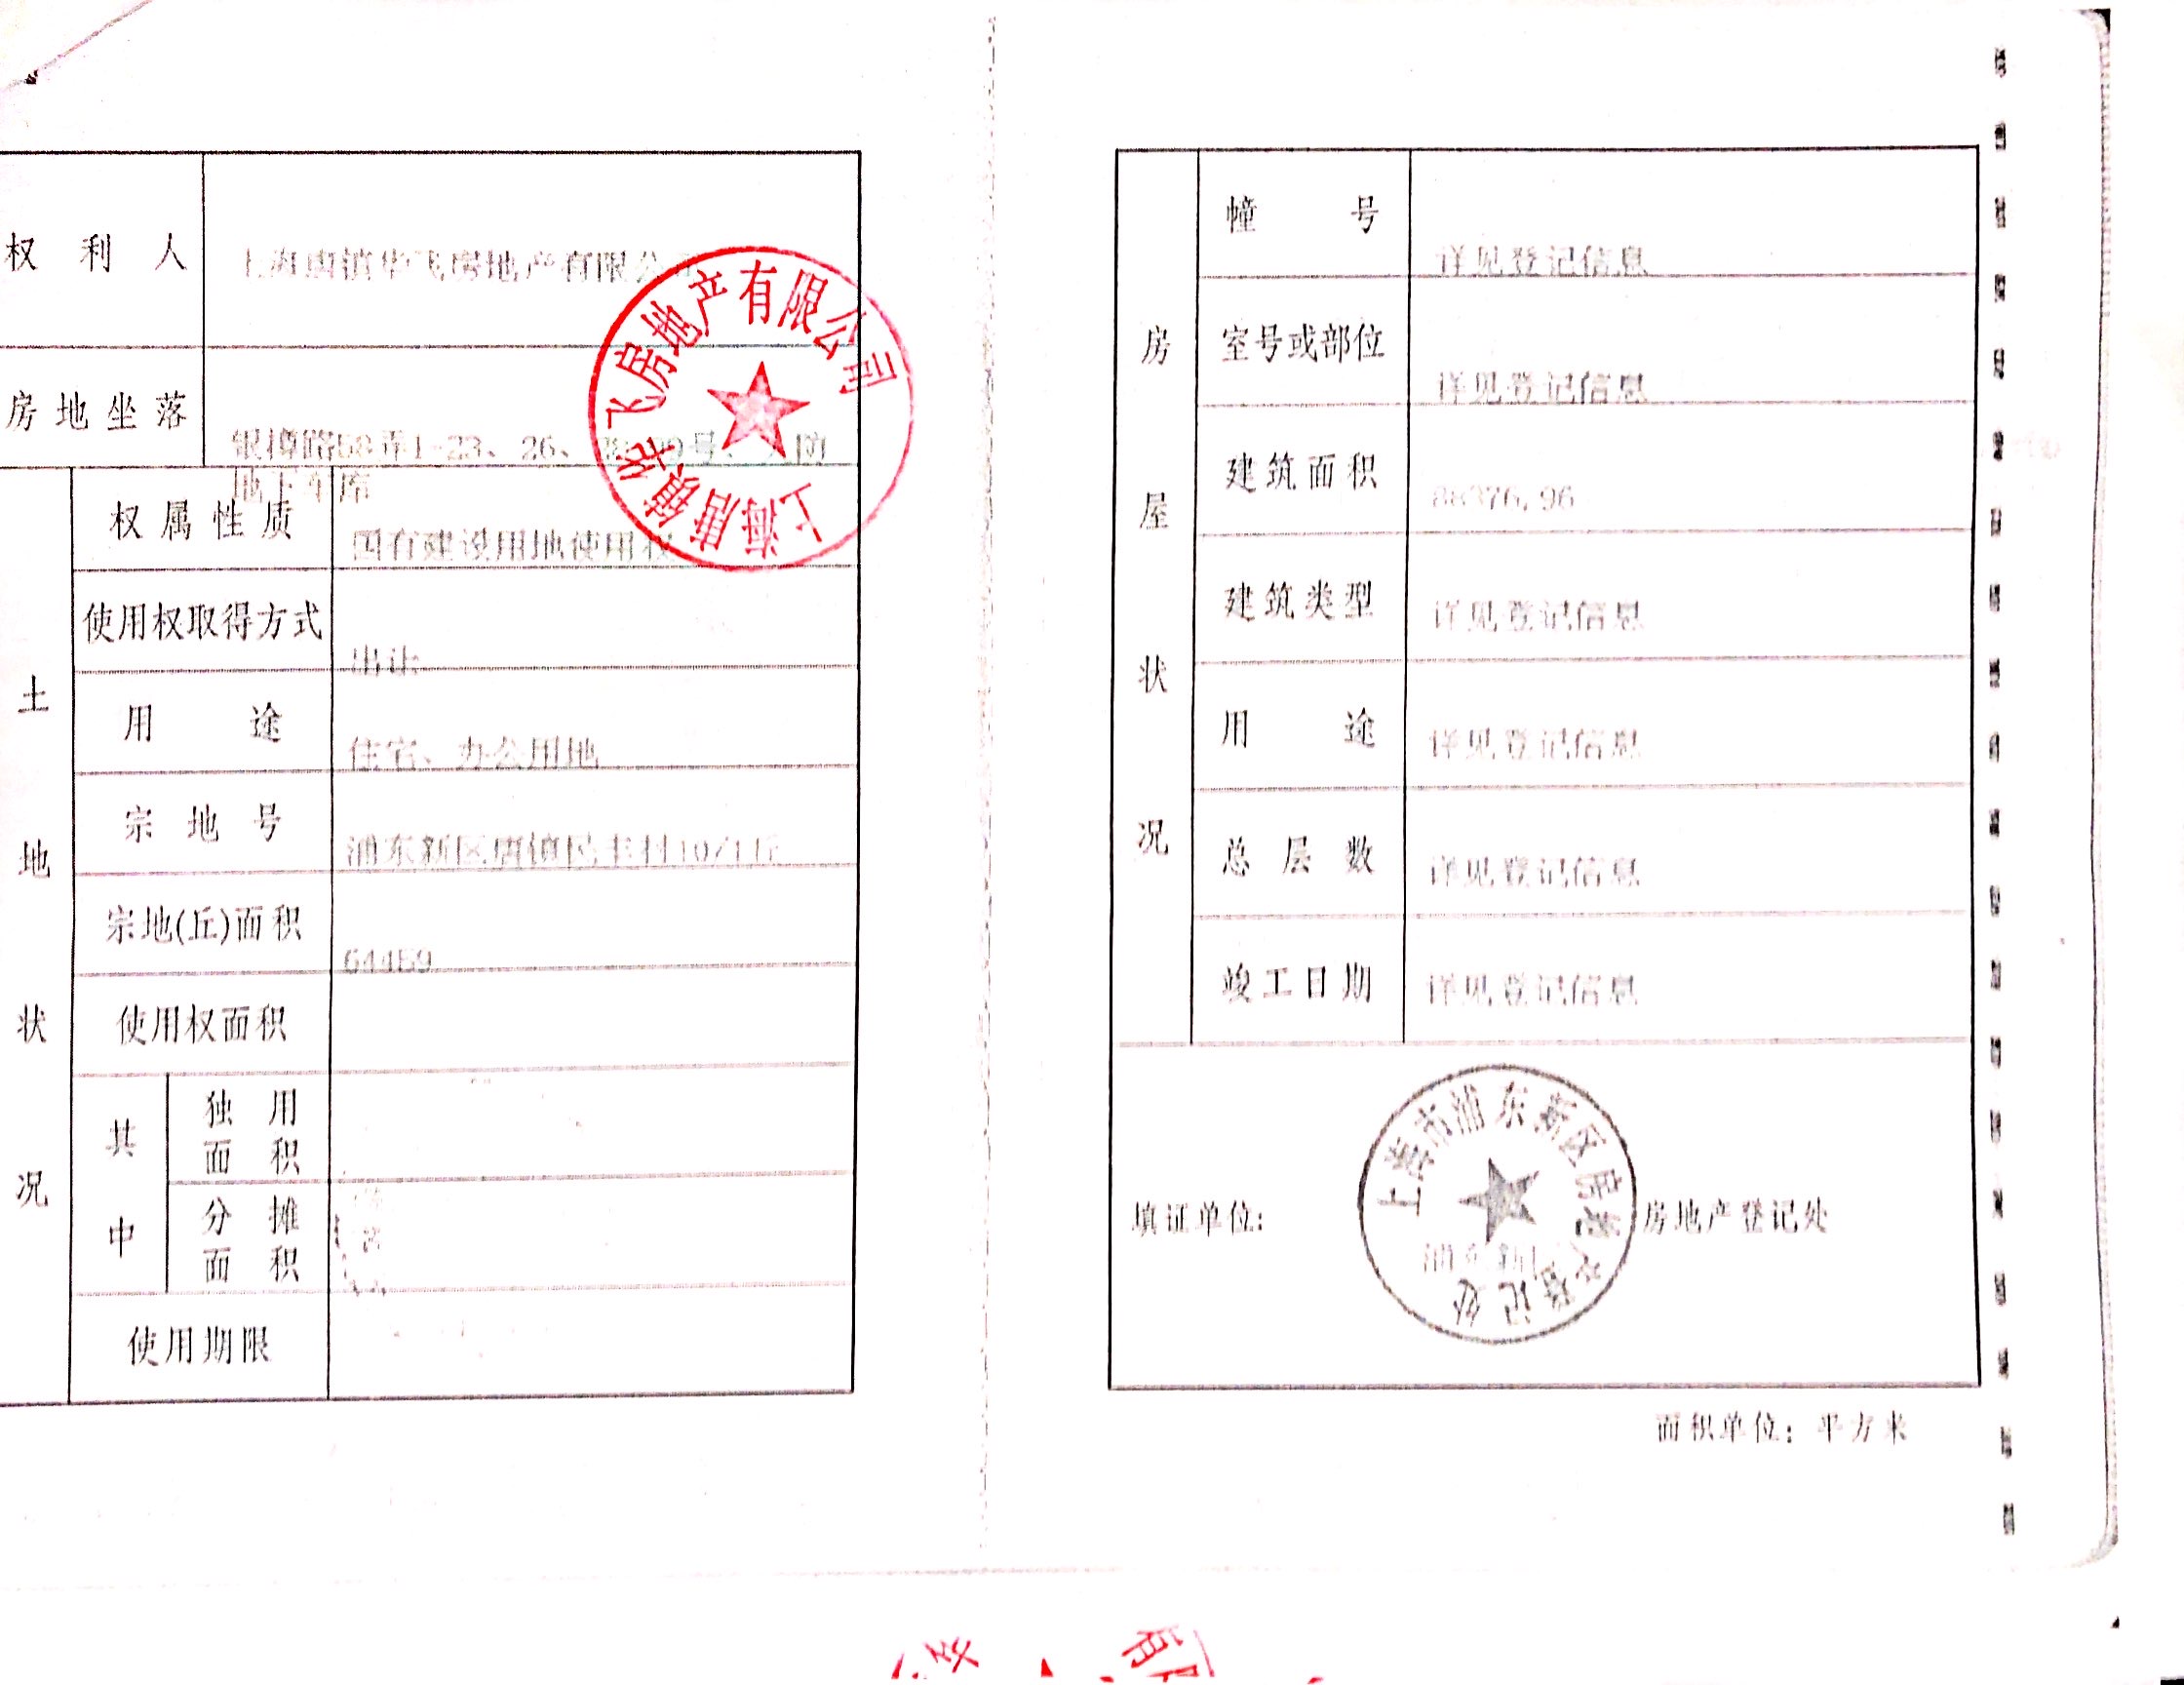 【上海市皇廷御府楼盘】房价,户型,开盘时间详情 预售许可证